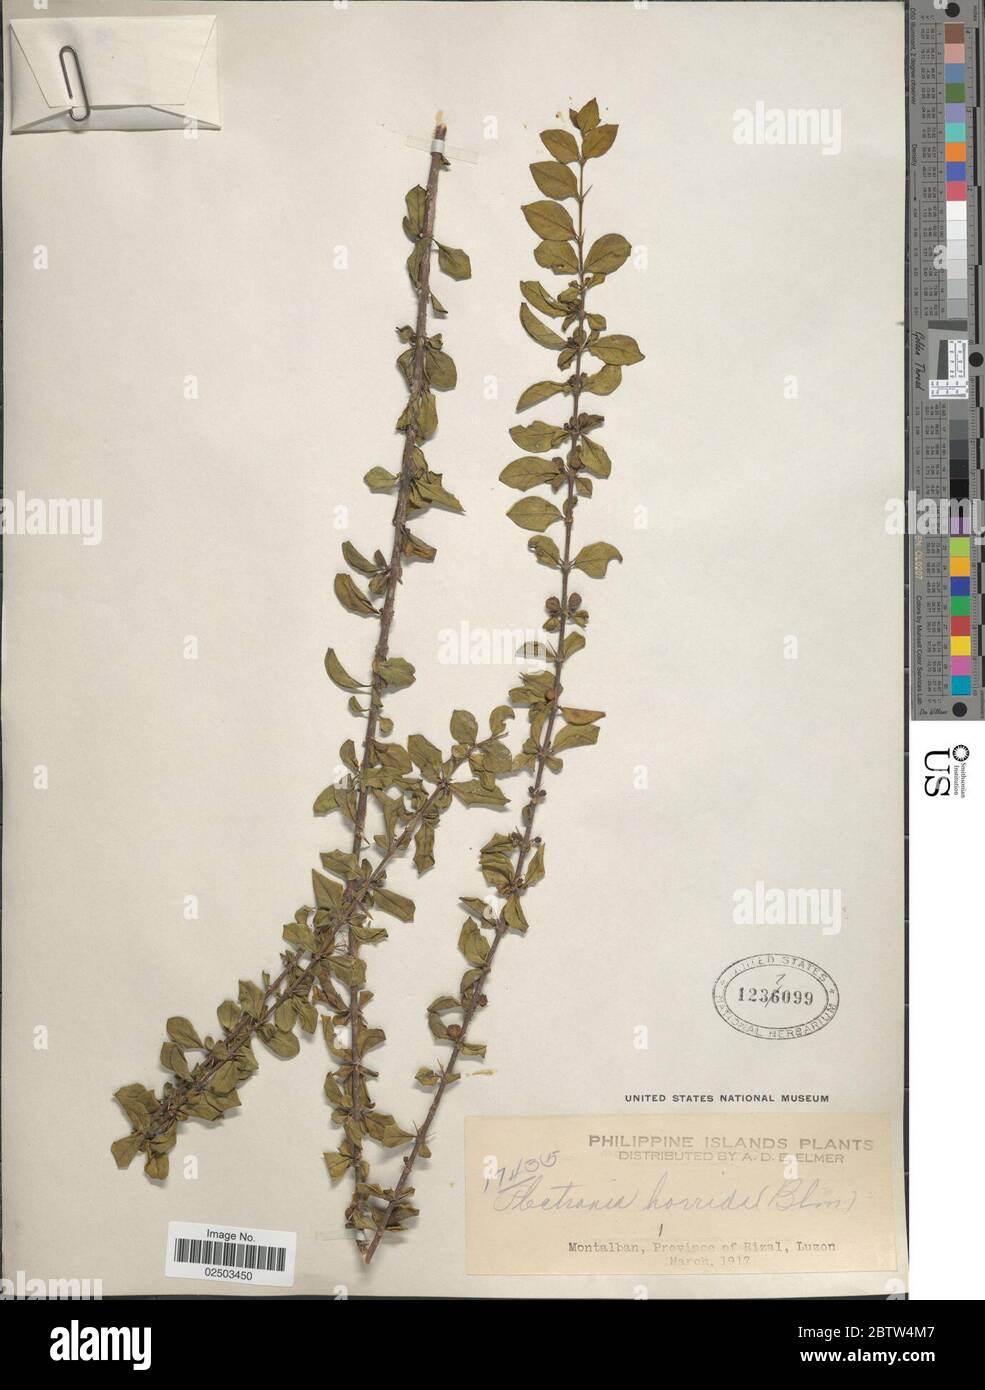 Canthium horridum Blume. Stock Photo